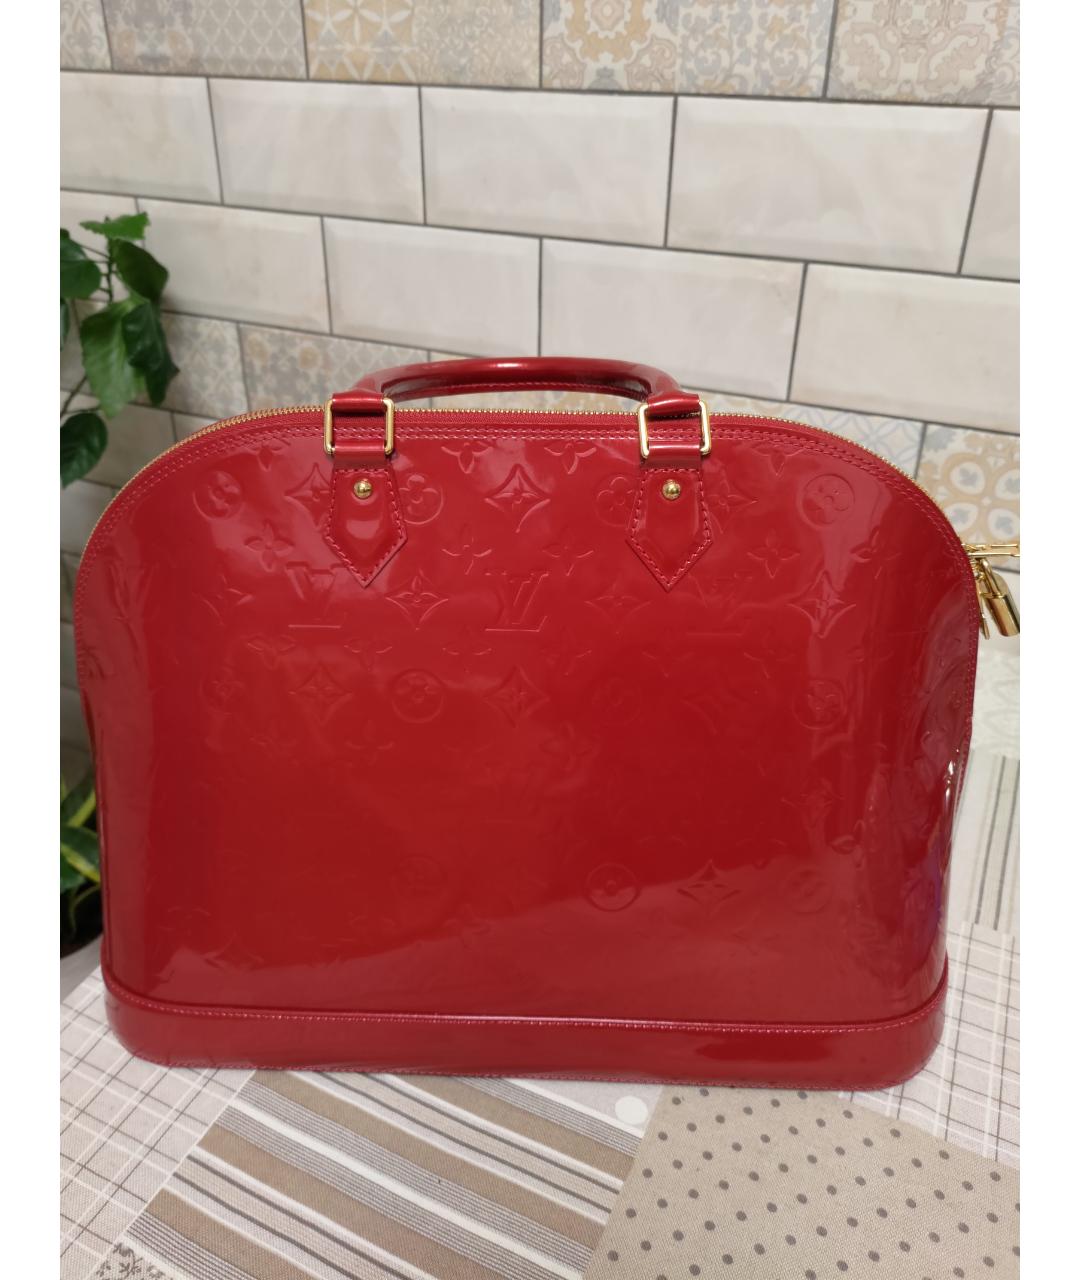 LOUIS VUITTON PRE-OWNED Красная сумка с короткими ручками из лакированной кожи, фото 2